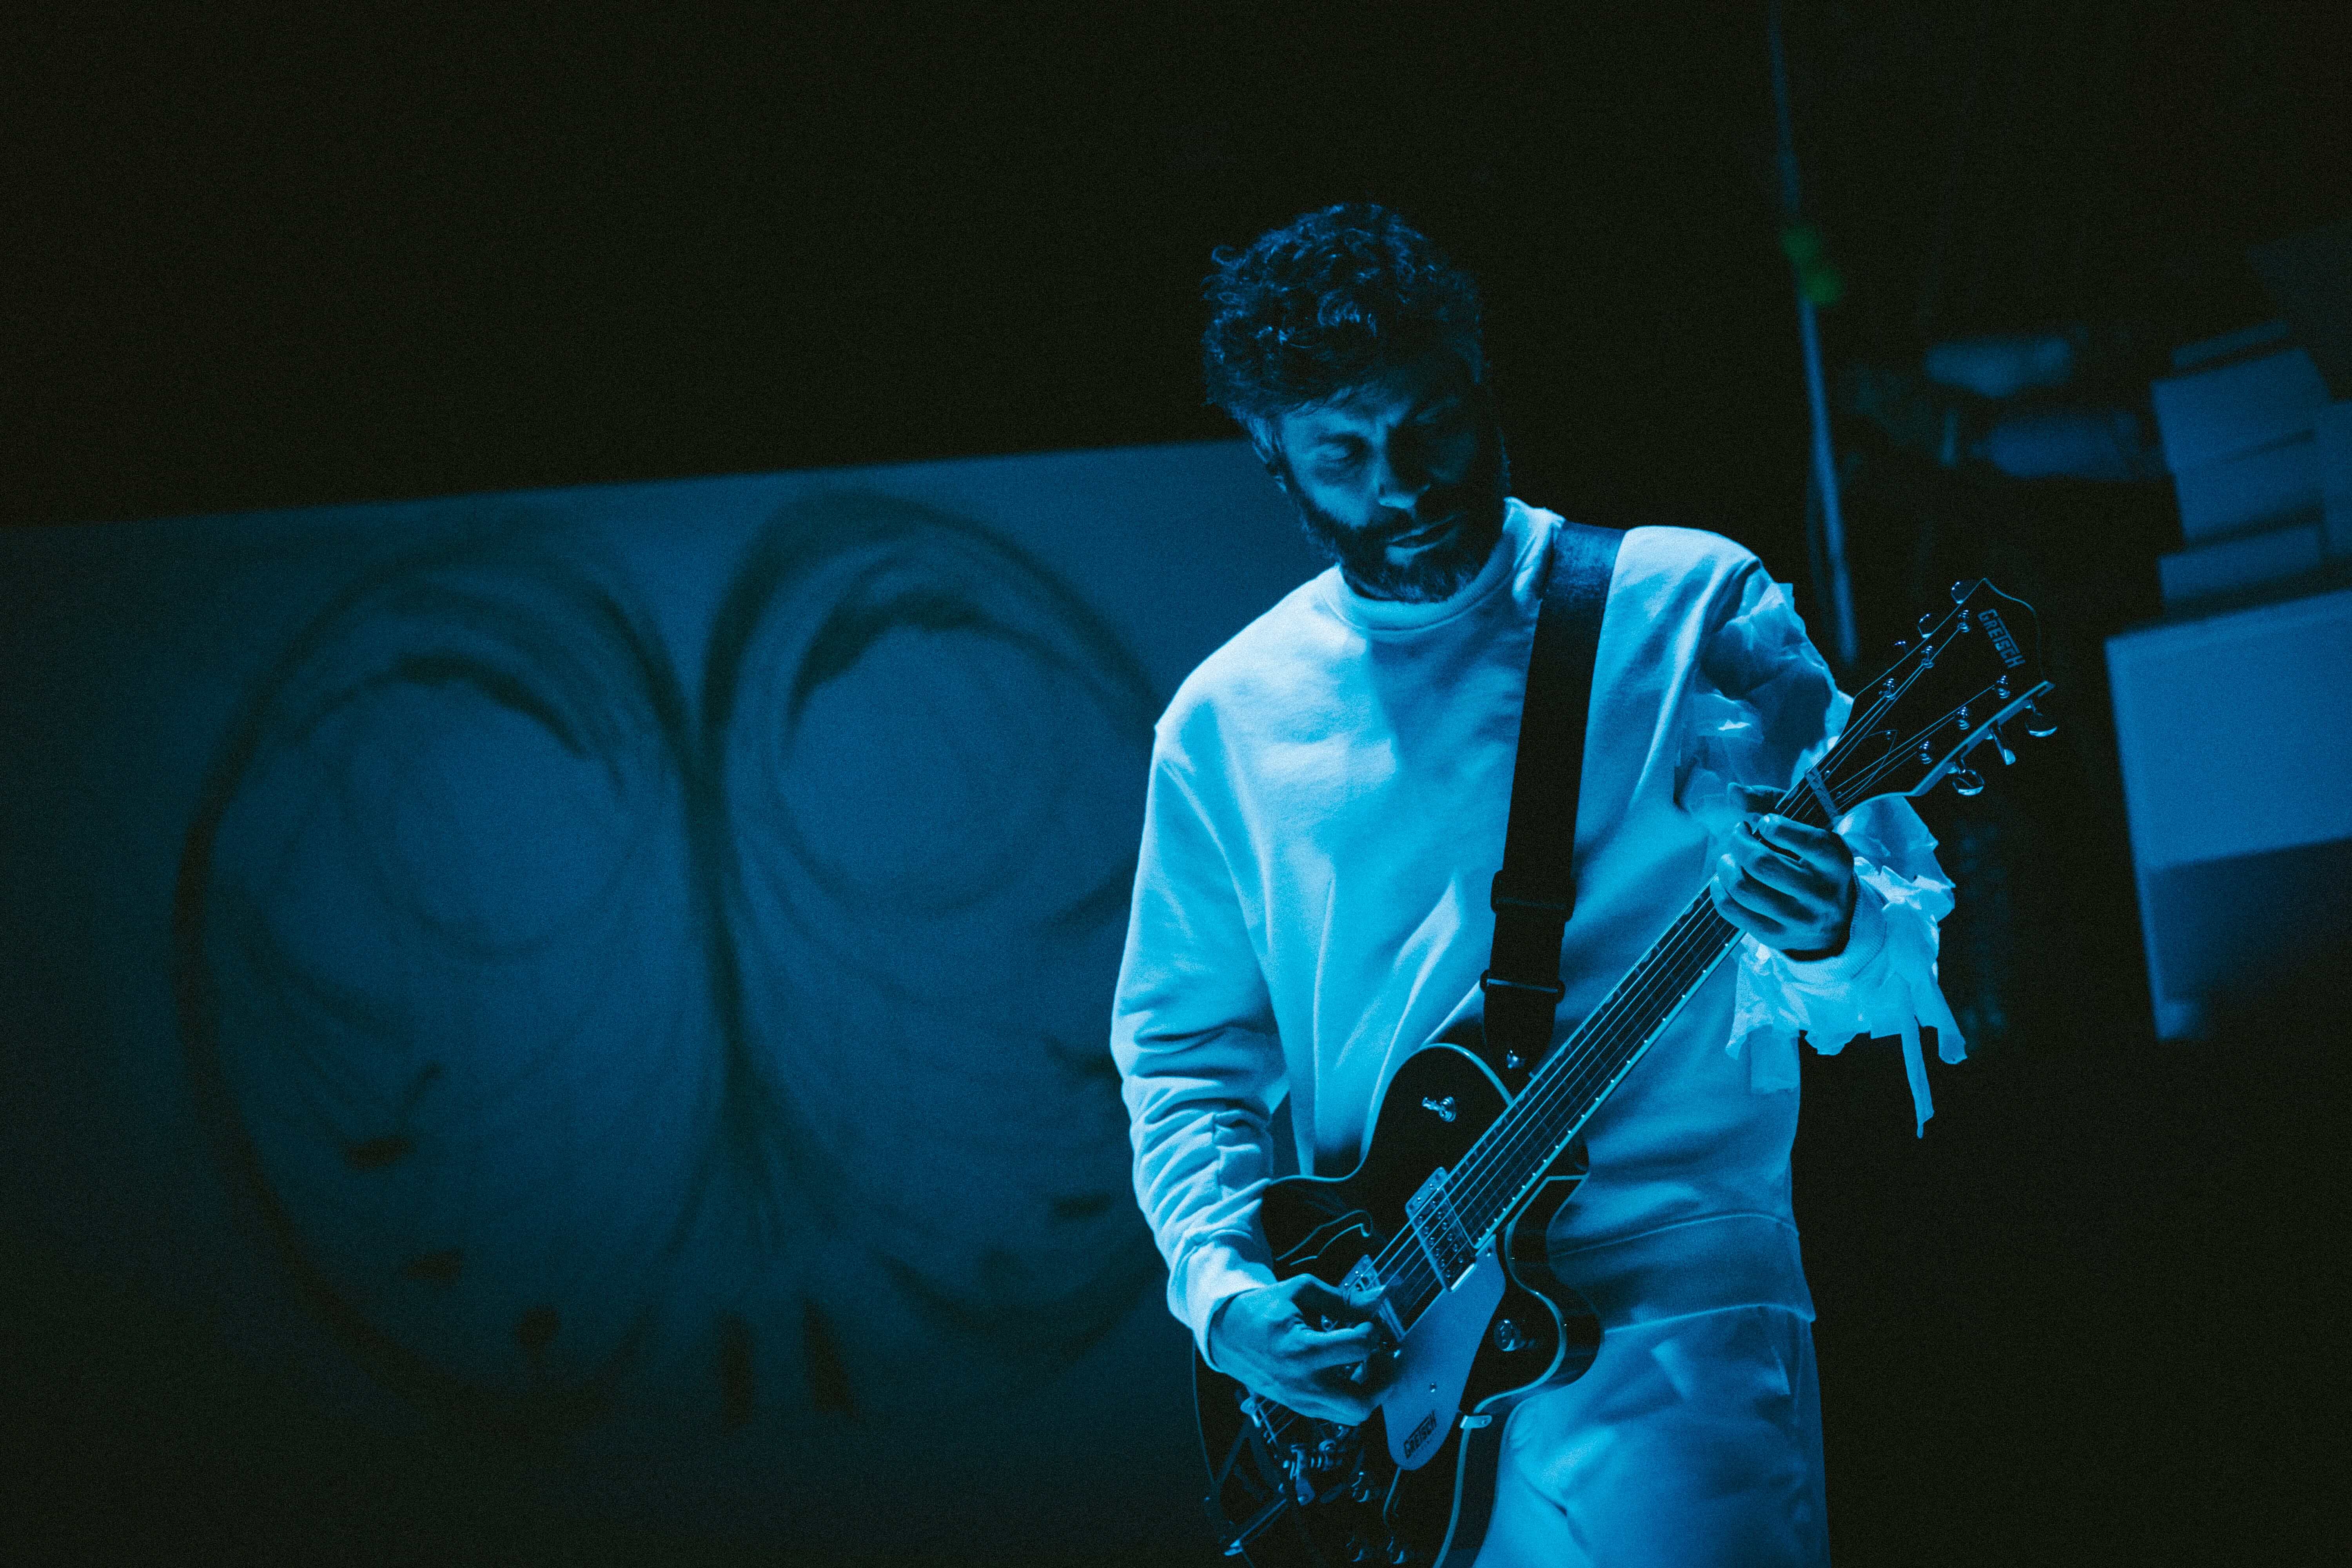 Fotografia de cena a cores com filtro azul. Músico, vestido de branco, toca guitarra elétrica.